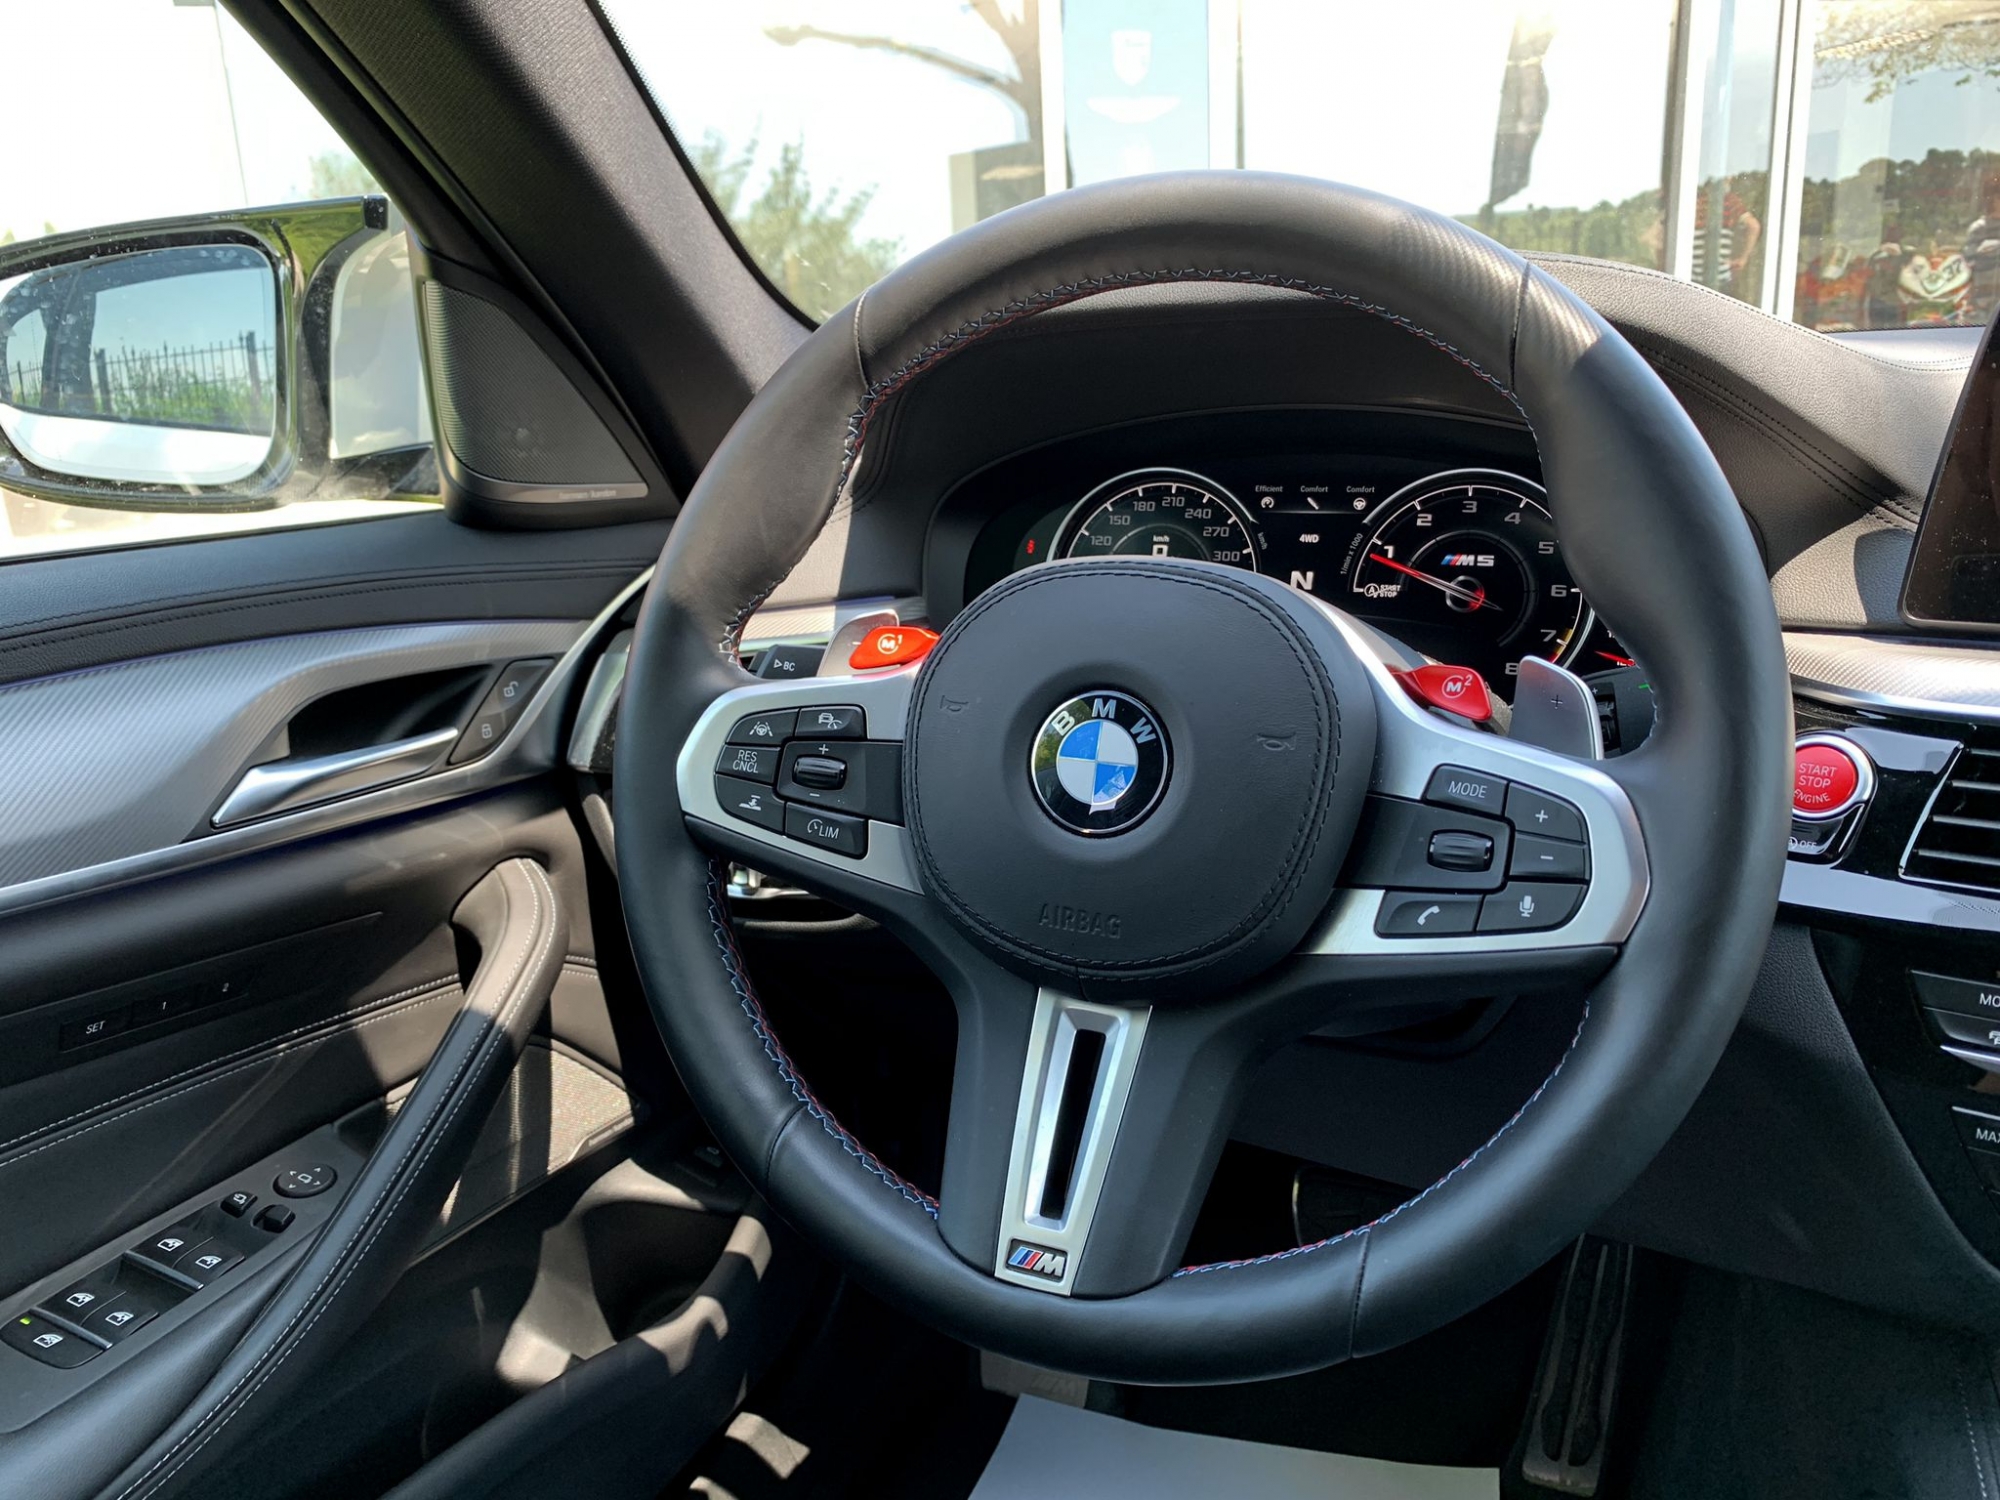 BMW M5 AUT. 600CV -NACIONAL, IVA DEDUCIBLE-